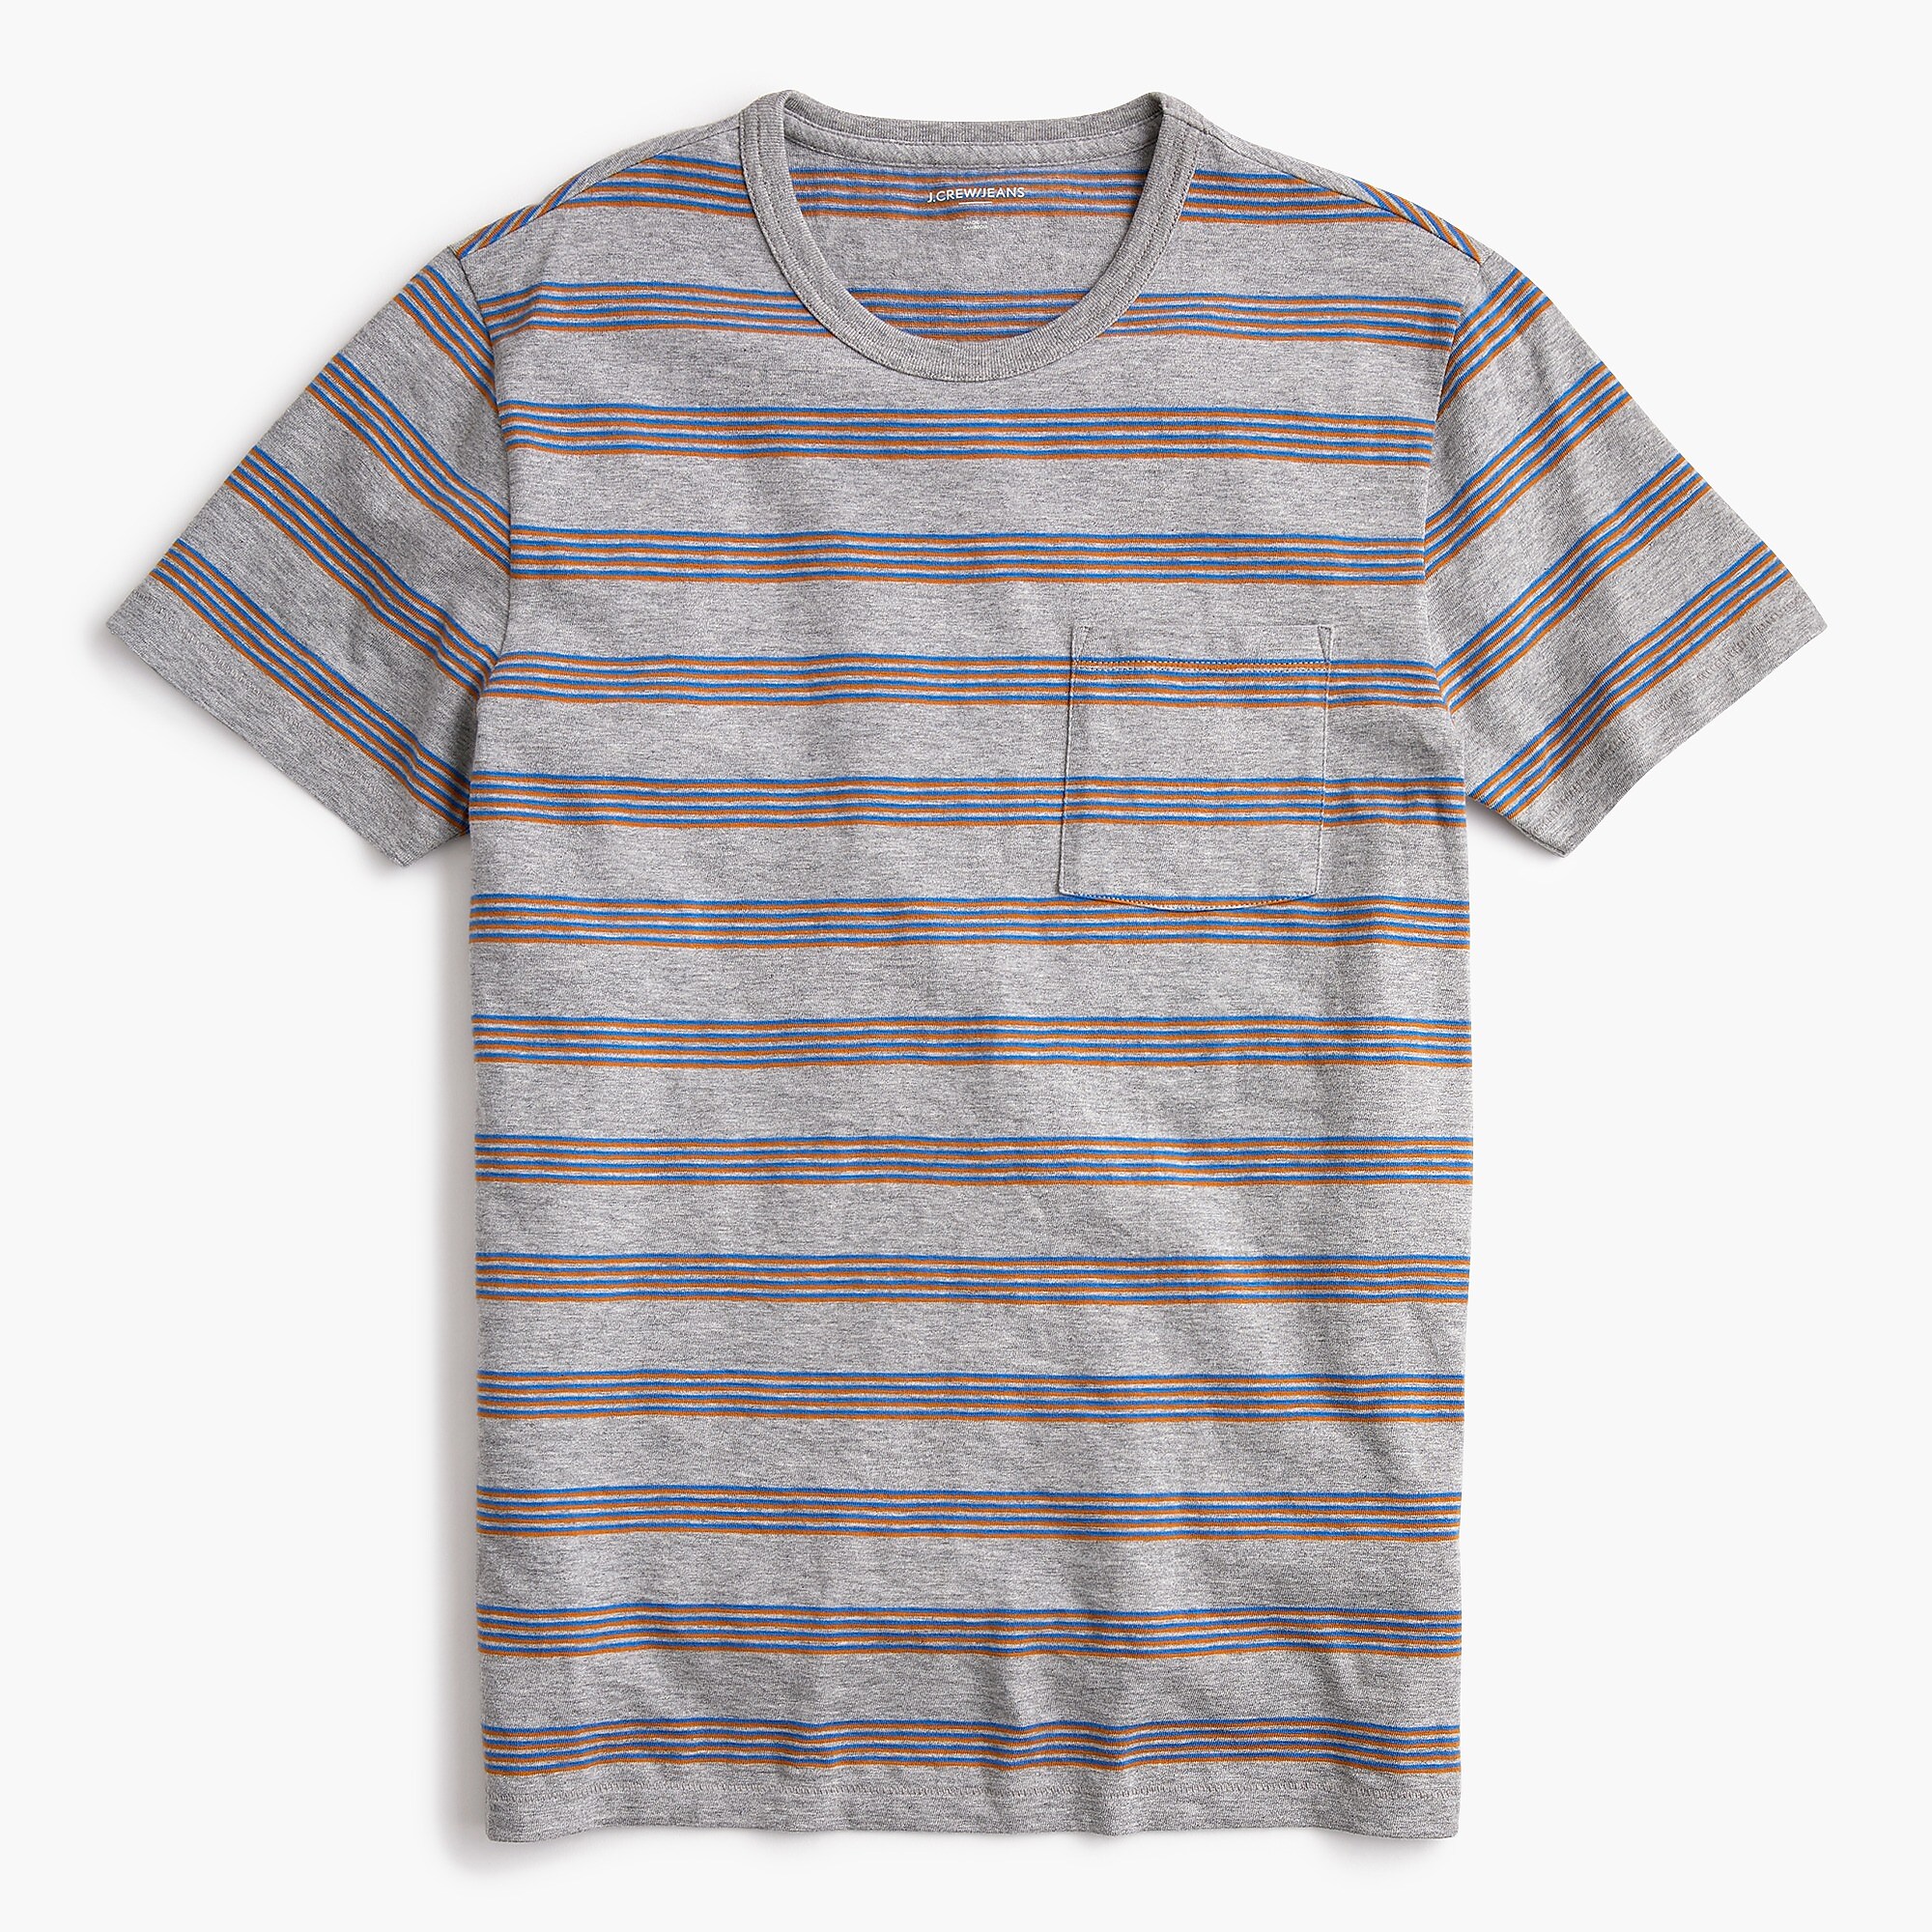 J.Crew: Slub Jersey Pocket T-shirt In Quad Stripe